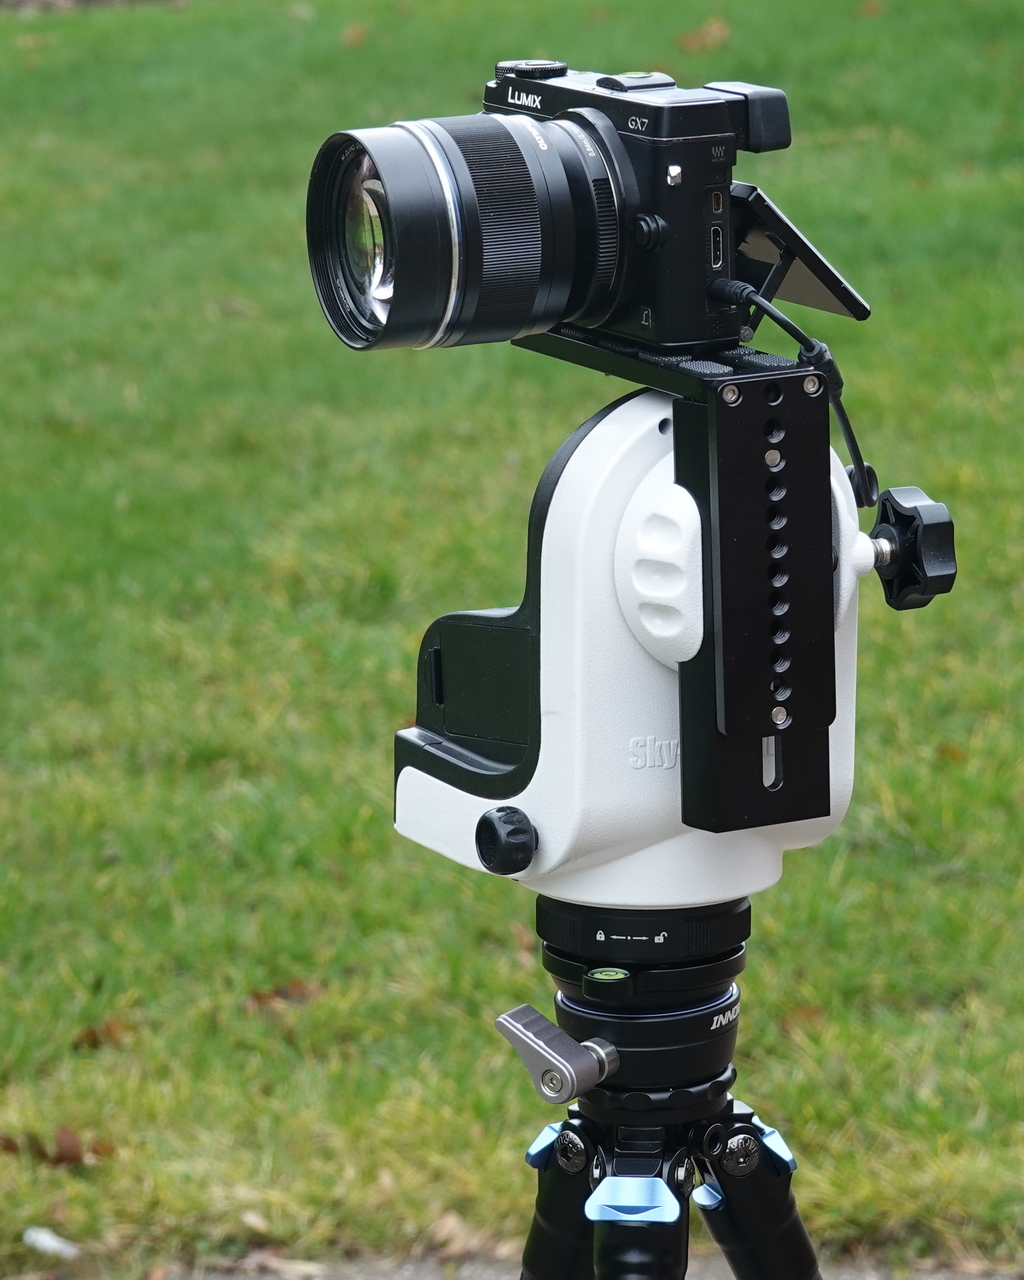 AZ-GTi with GX7 camera